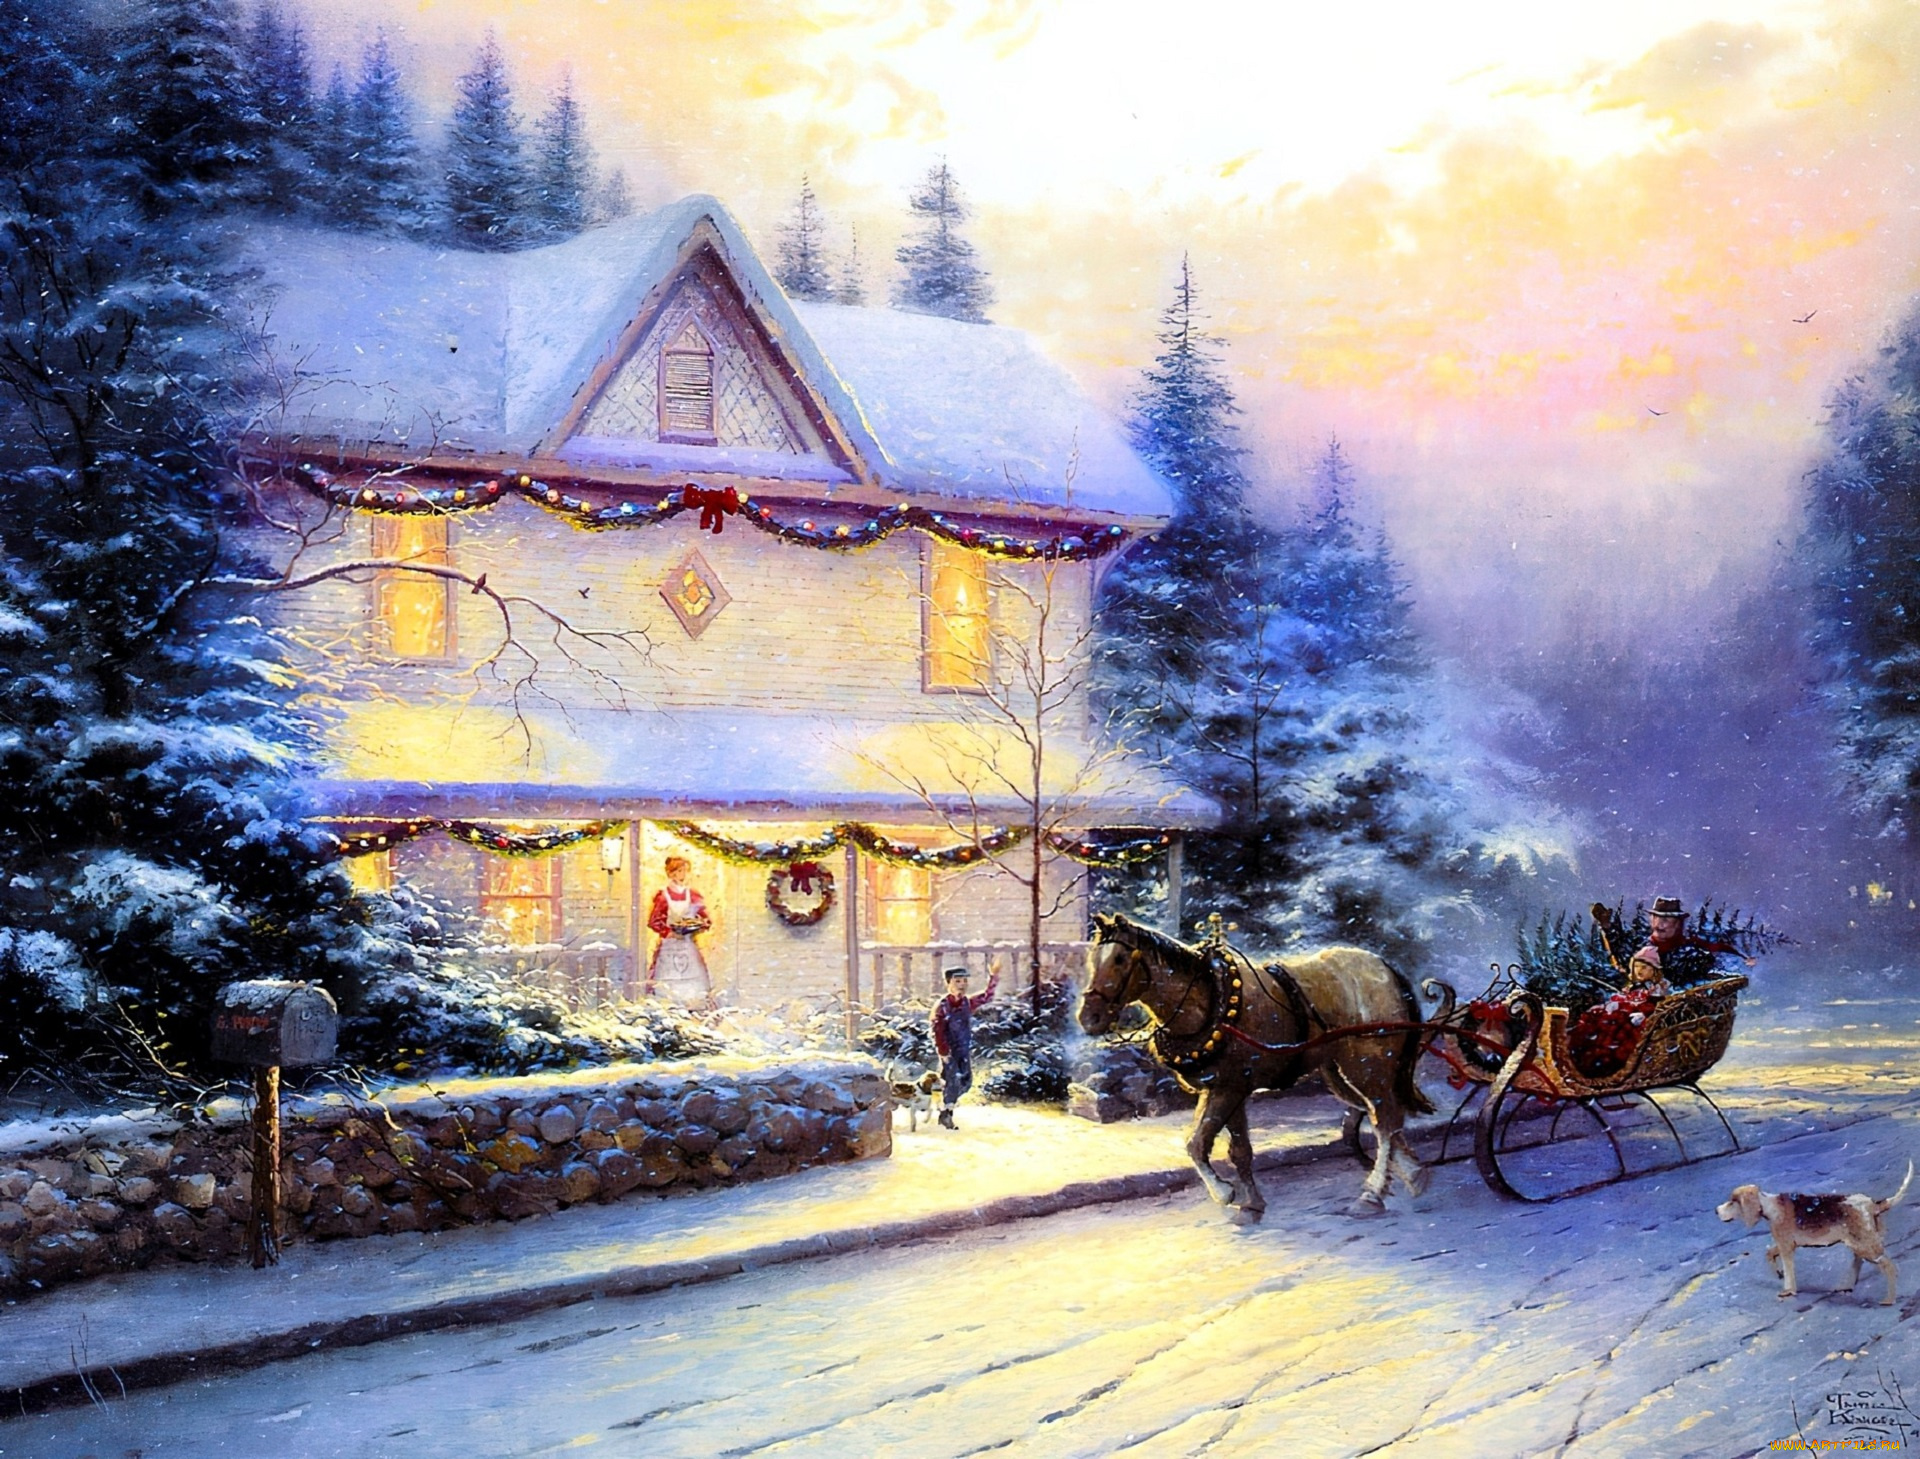 рисованное, thomas, kinkade, дом, снег, деревья, люди, сани, лошадь